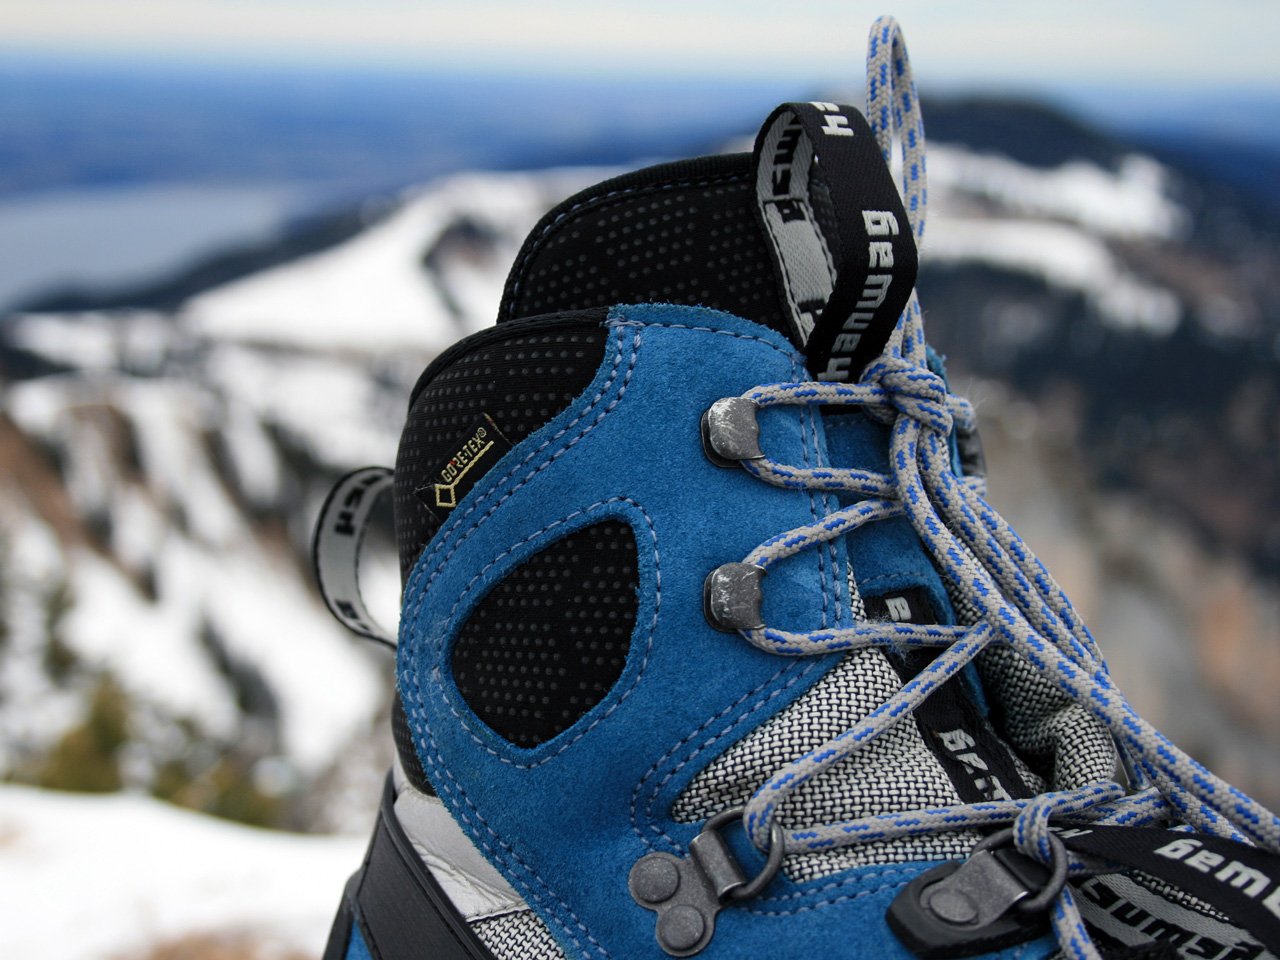 Testbericht – Hanwag Ferrata Combi GTX: Leicht, komfortabel und robust – ein wahres Multitalent für alpine Einsteiger